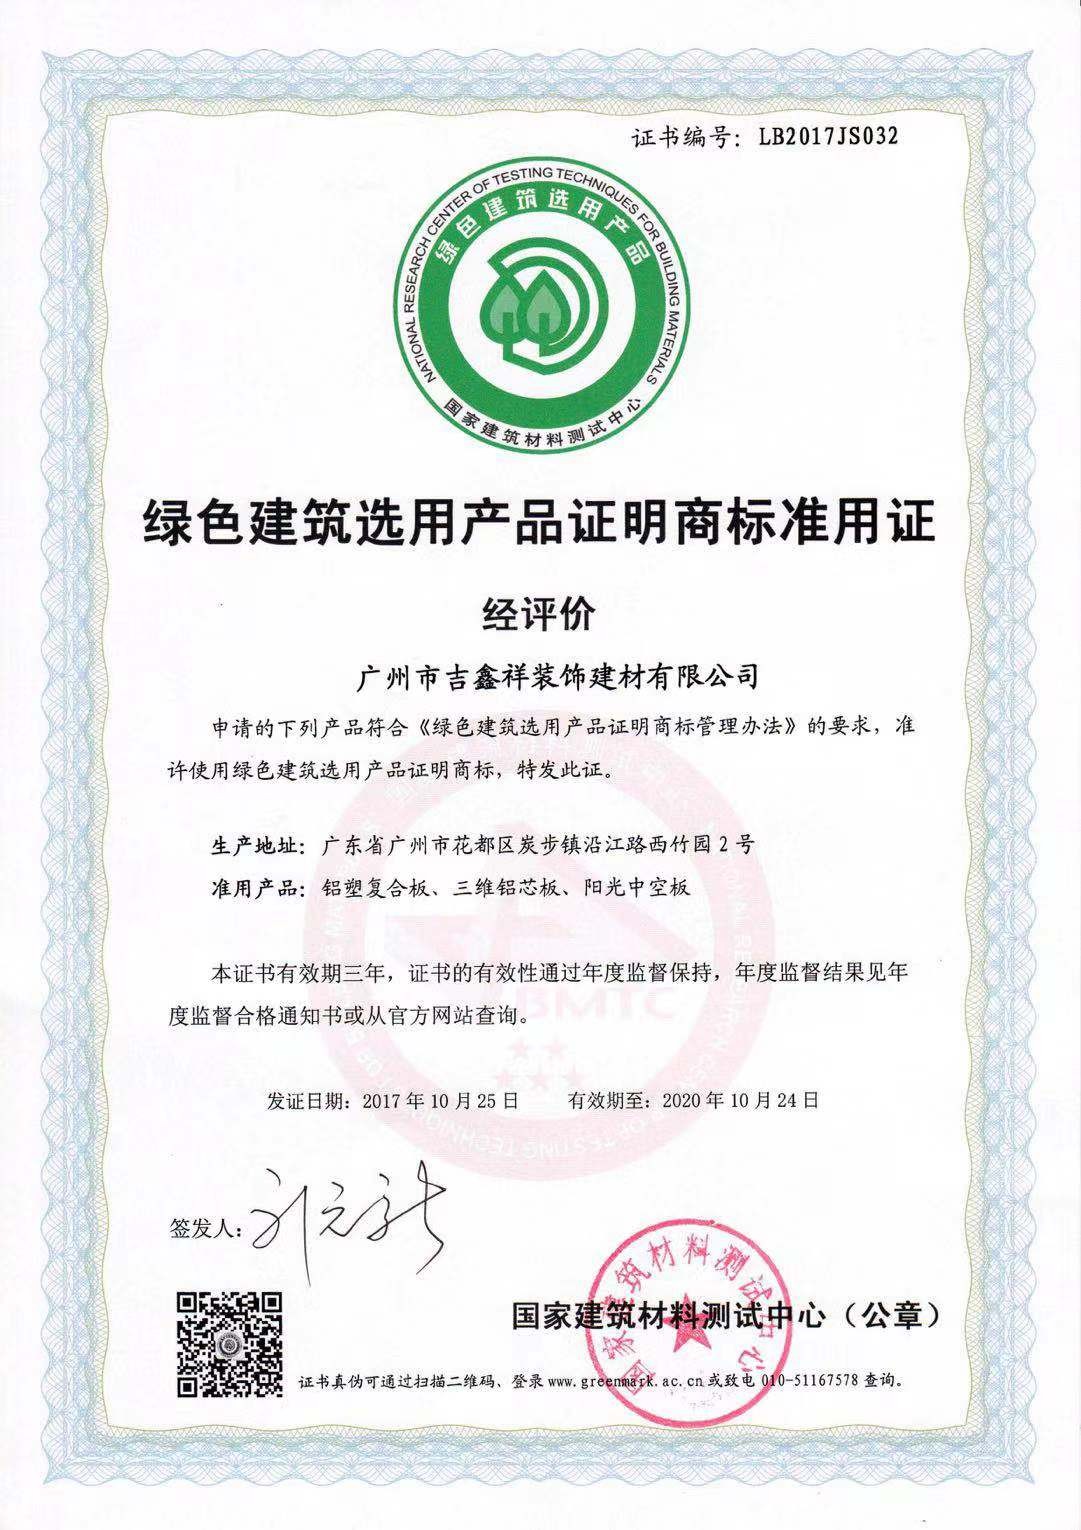 certificat de materiale de construcții verzi